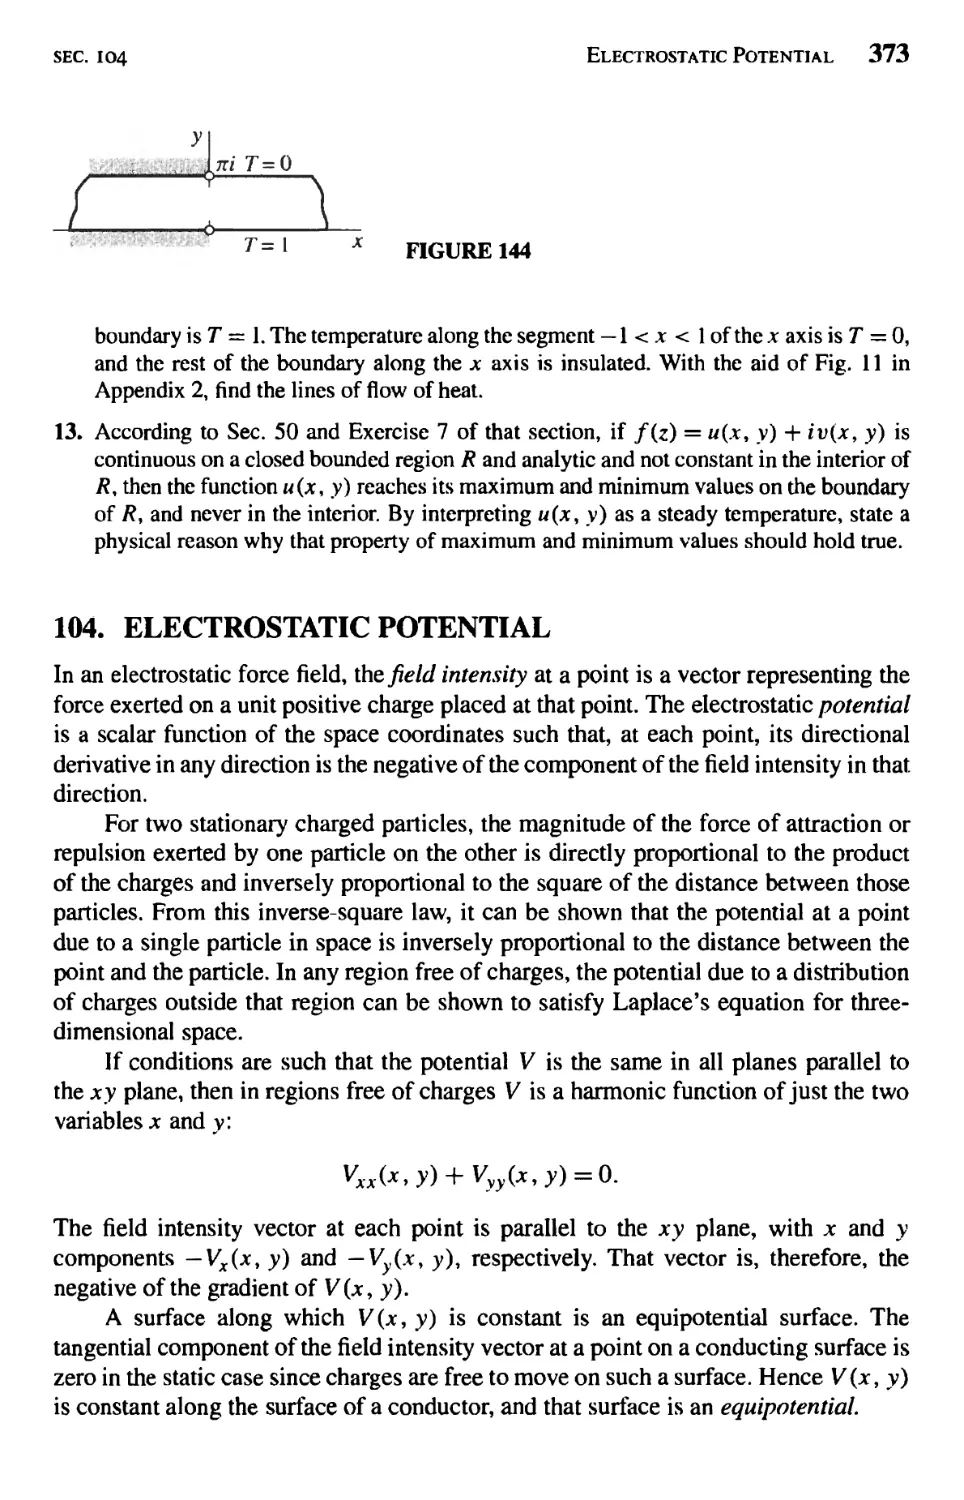 Electrostatic Potential